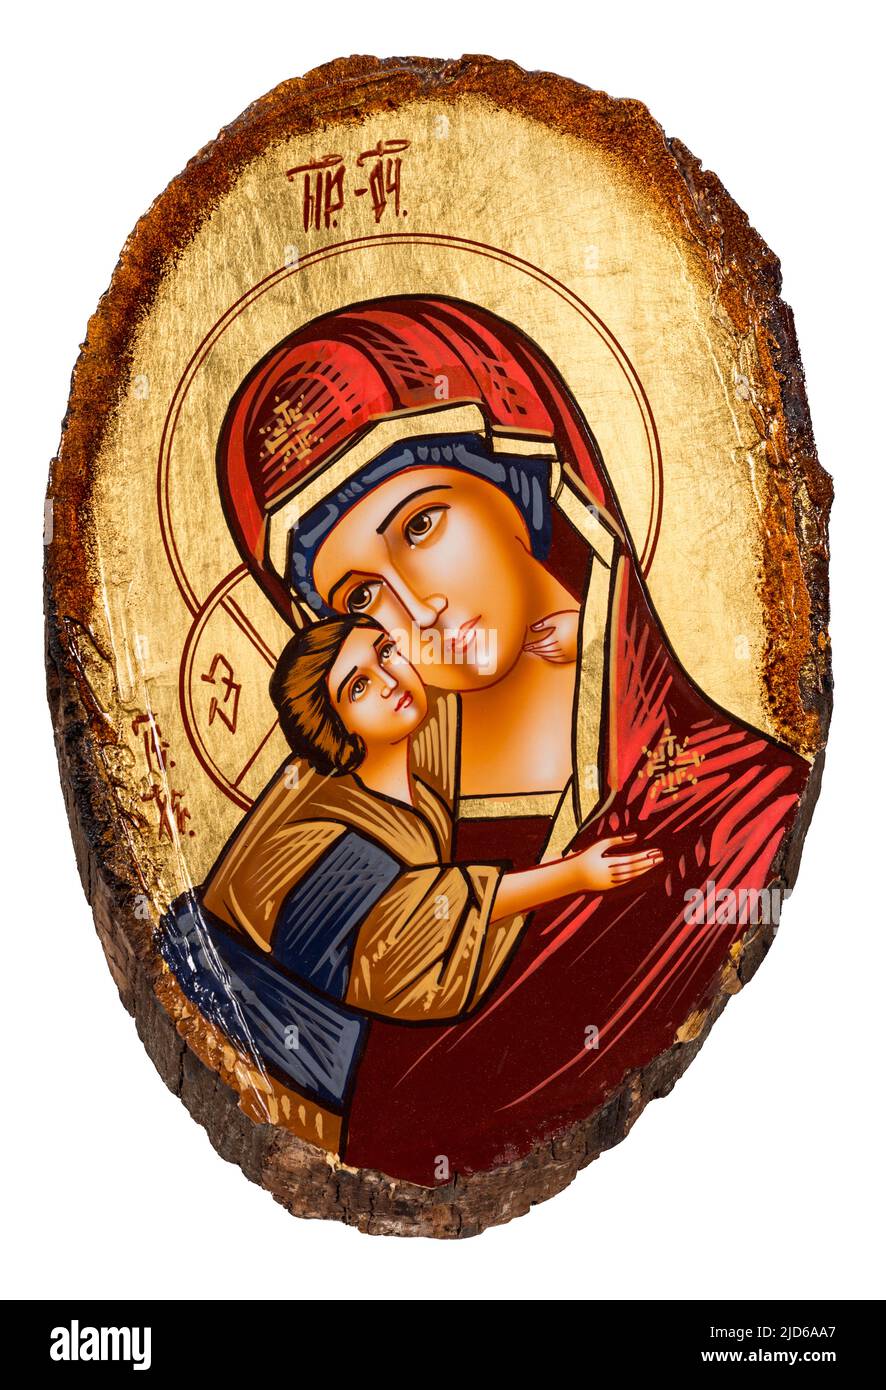 Icône peinte dans le style byzantin ou orthodoxe représentant la Vierge Marie et le bébé Jésus. Peinture sur un bois coupé d'un tronc d'arbre. Banque D'Images